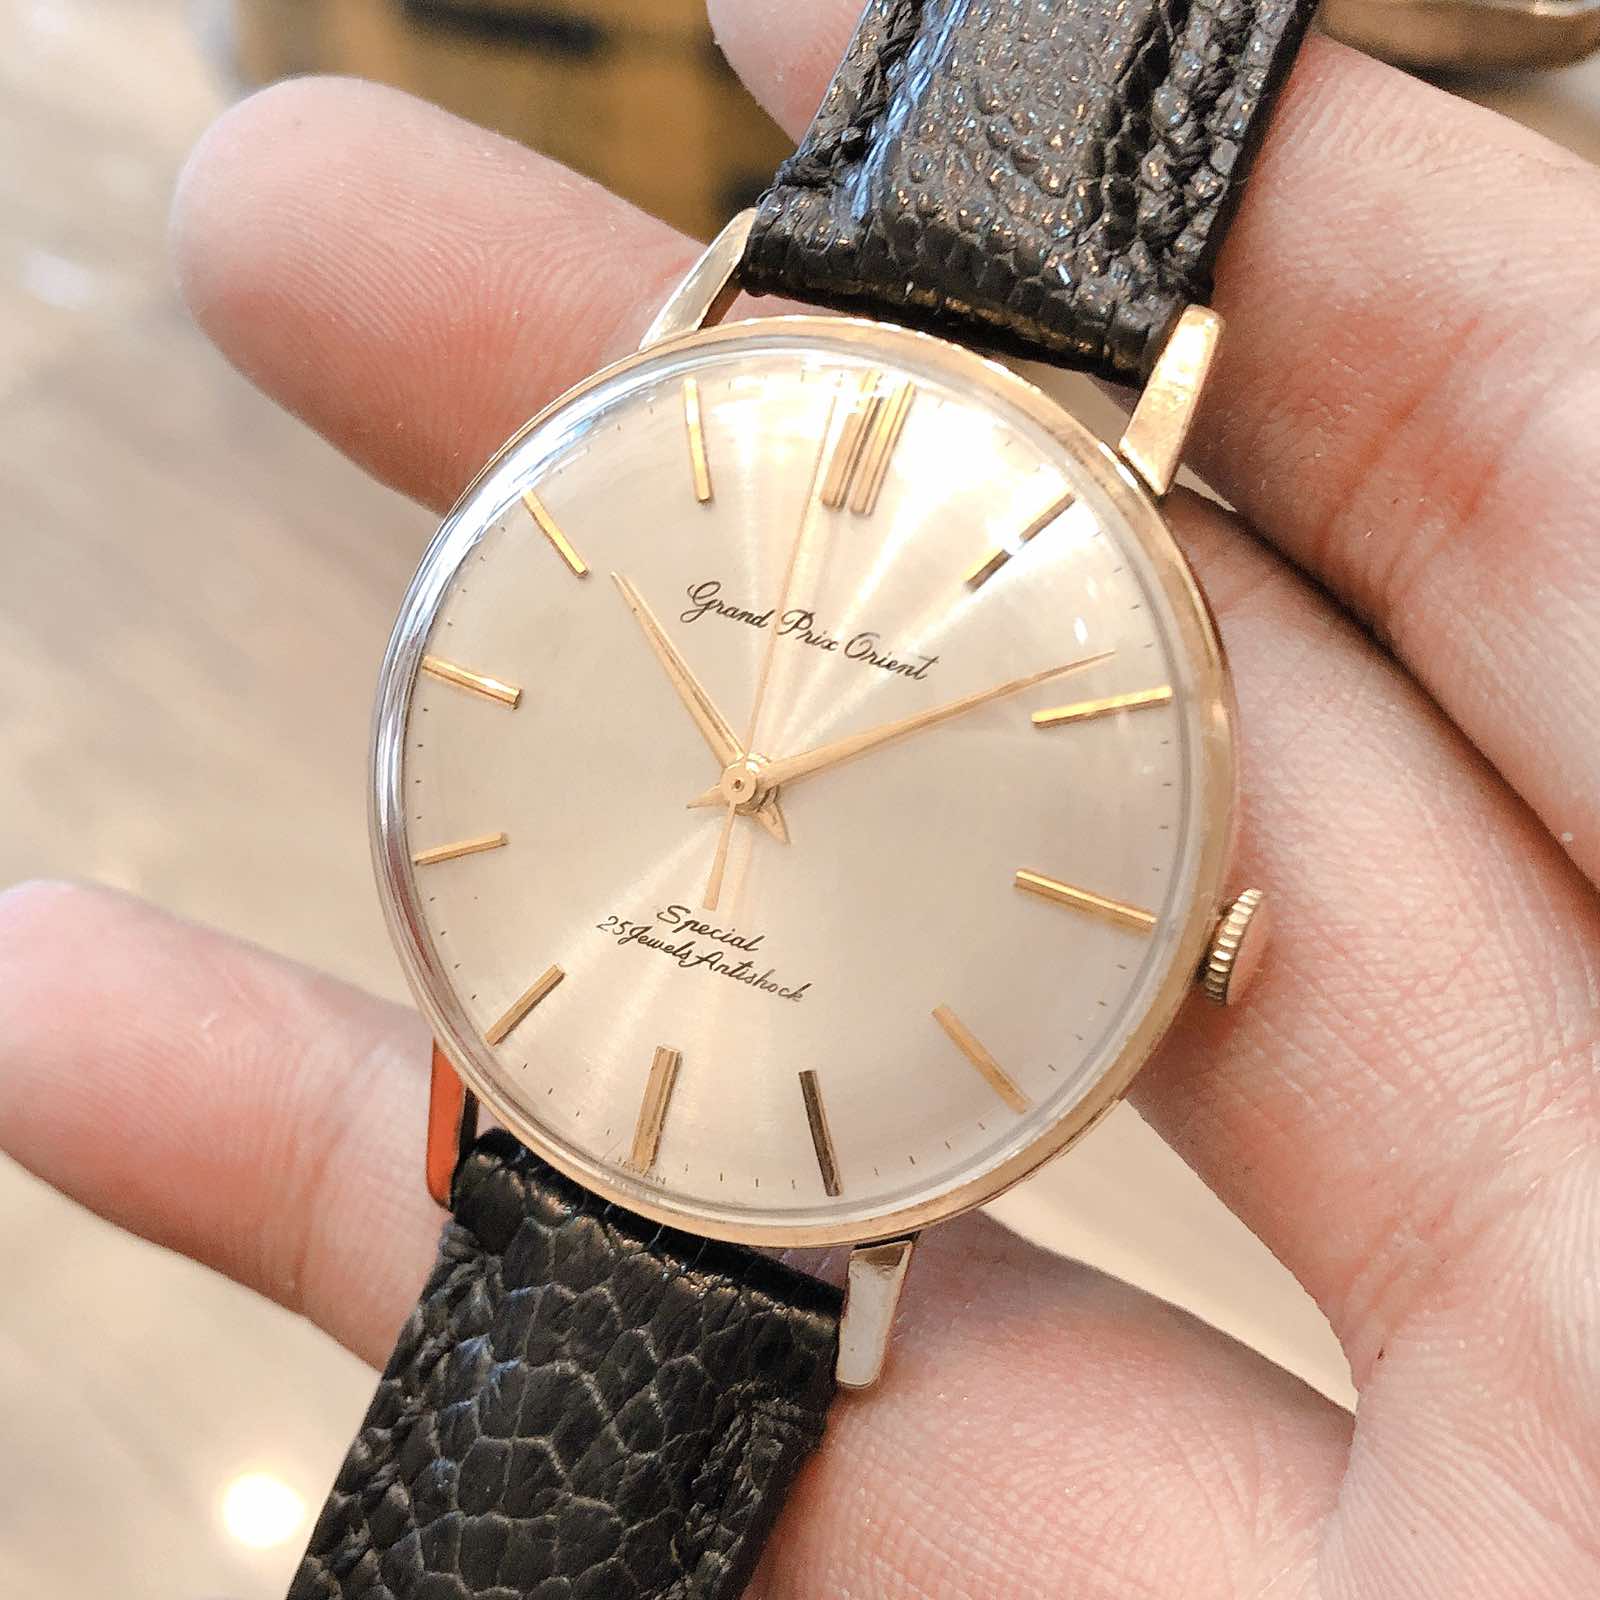 Đồng hồ cổ Orient Grand Prix lên dây bọc vàng 14k goldfilled chính hãng nhật bản